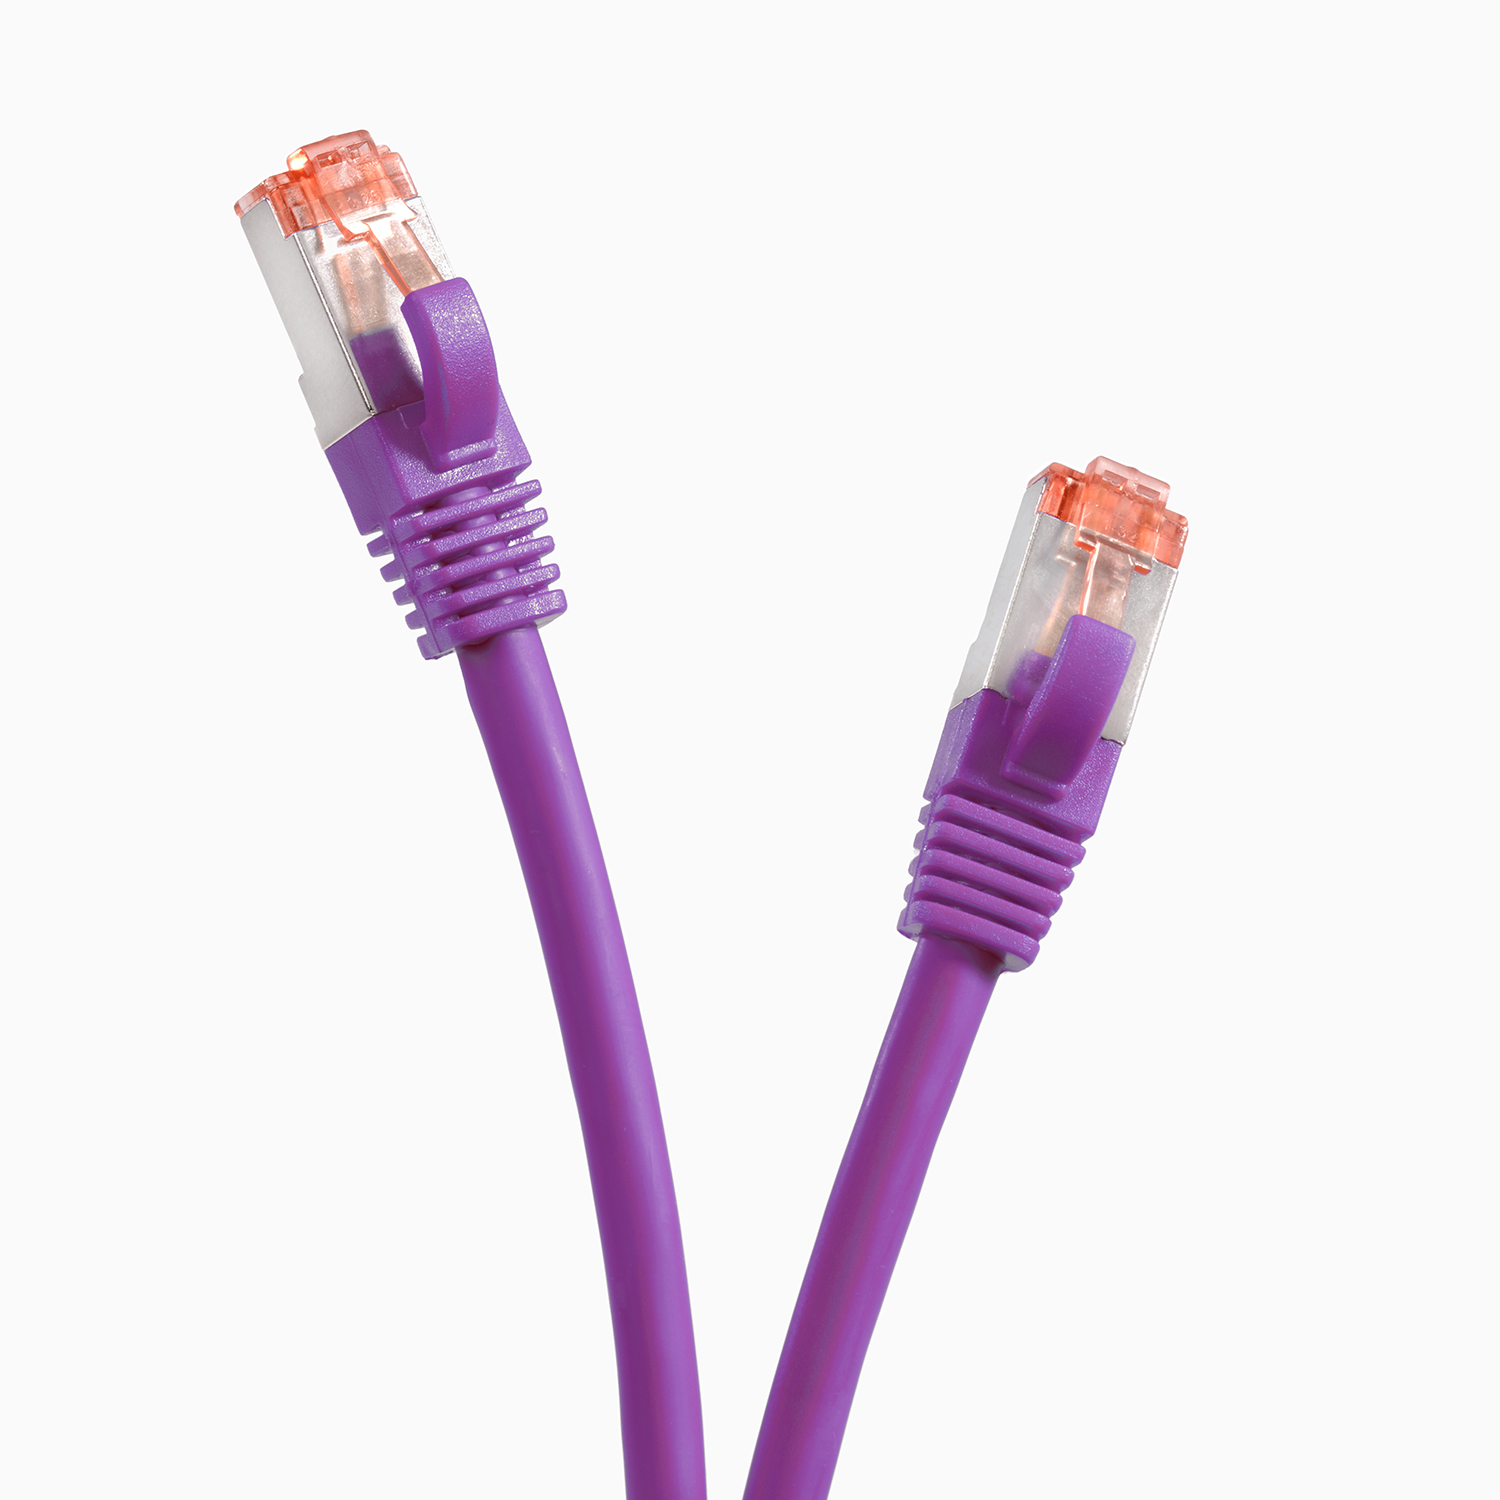 TPFNET 20m Patchkabel / Netzwerkkabel, m 20 S/FTP 1000Mbit, Netzwerkkabel violett